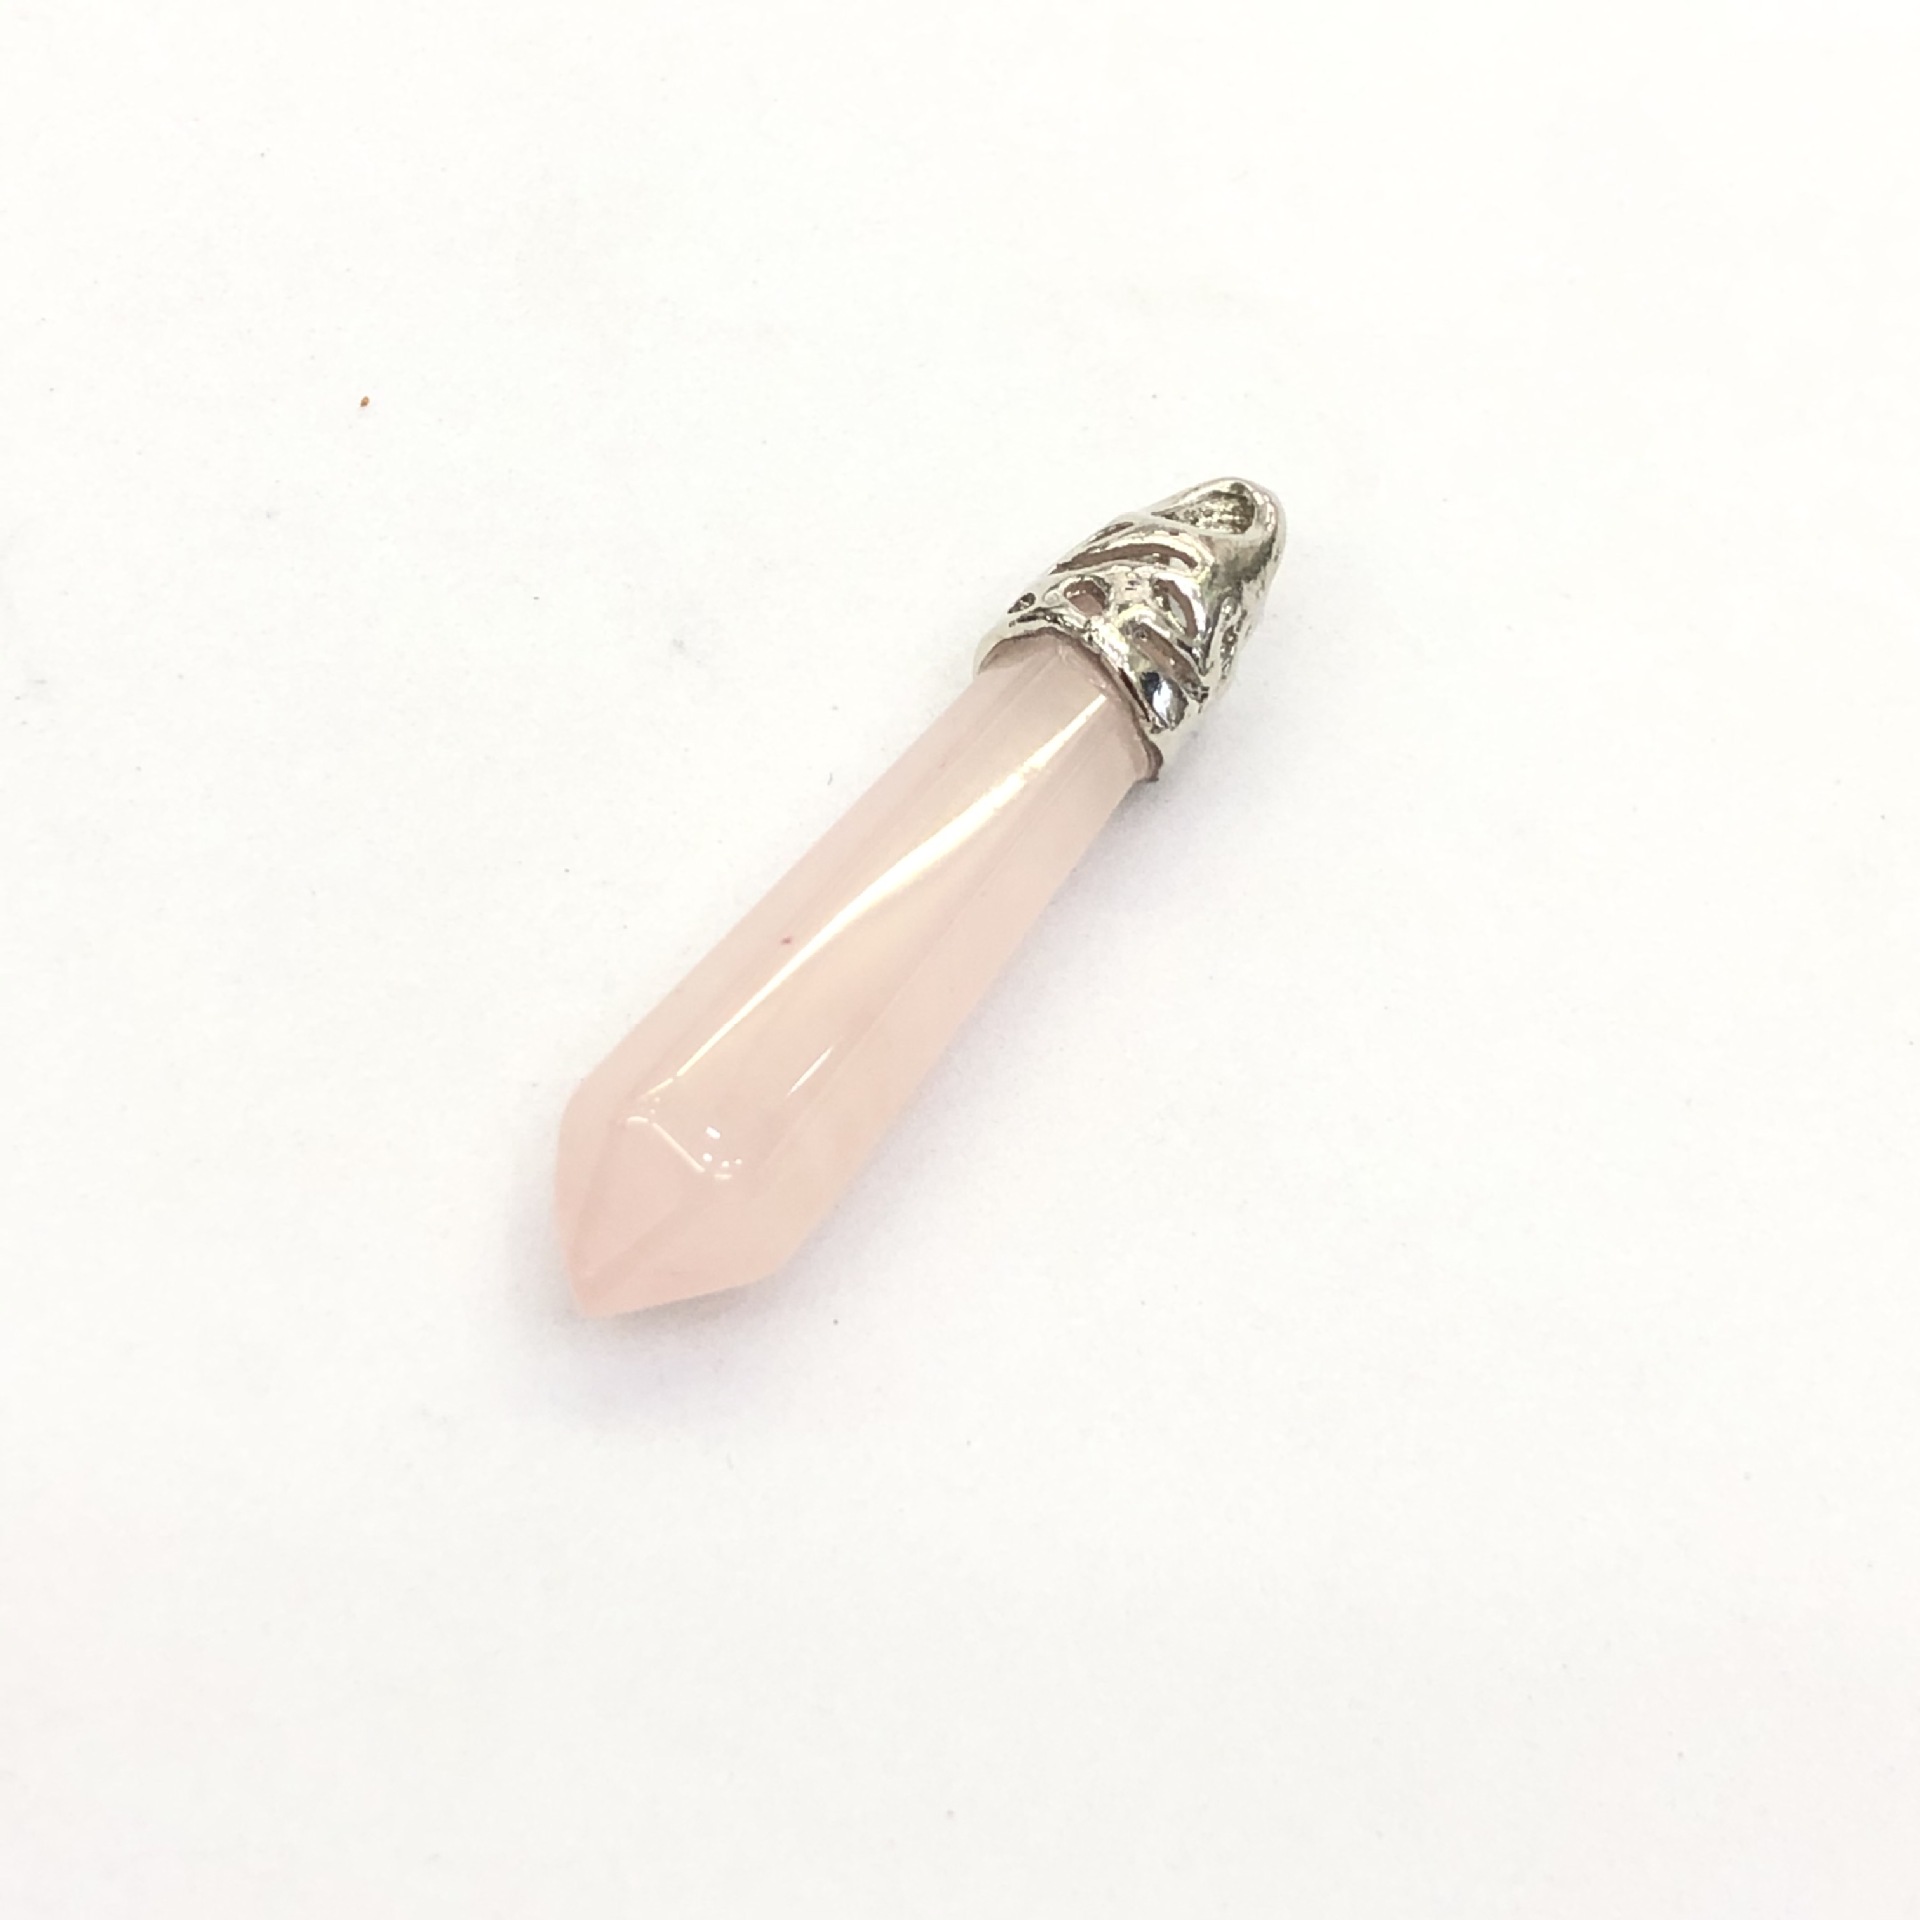 2:Pink crystal